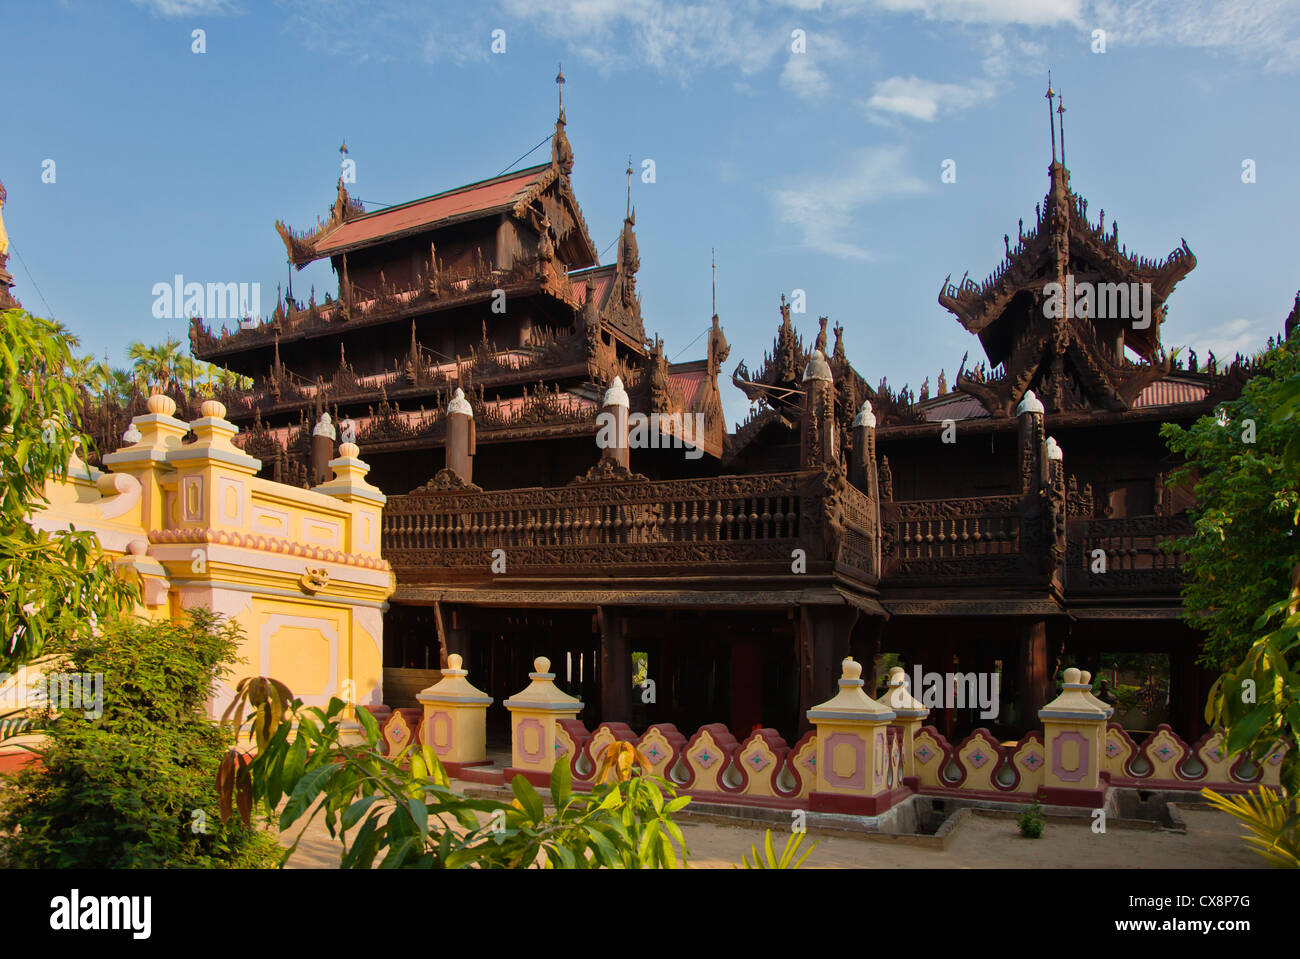 Le SHWE DANS BIN KYAUNG connu comme le monastère en teck a été construit en 1895 - MANDALAY, MYANMAR Banque D'Images